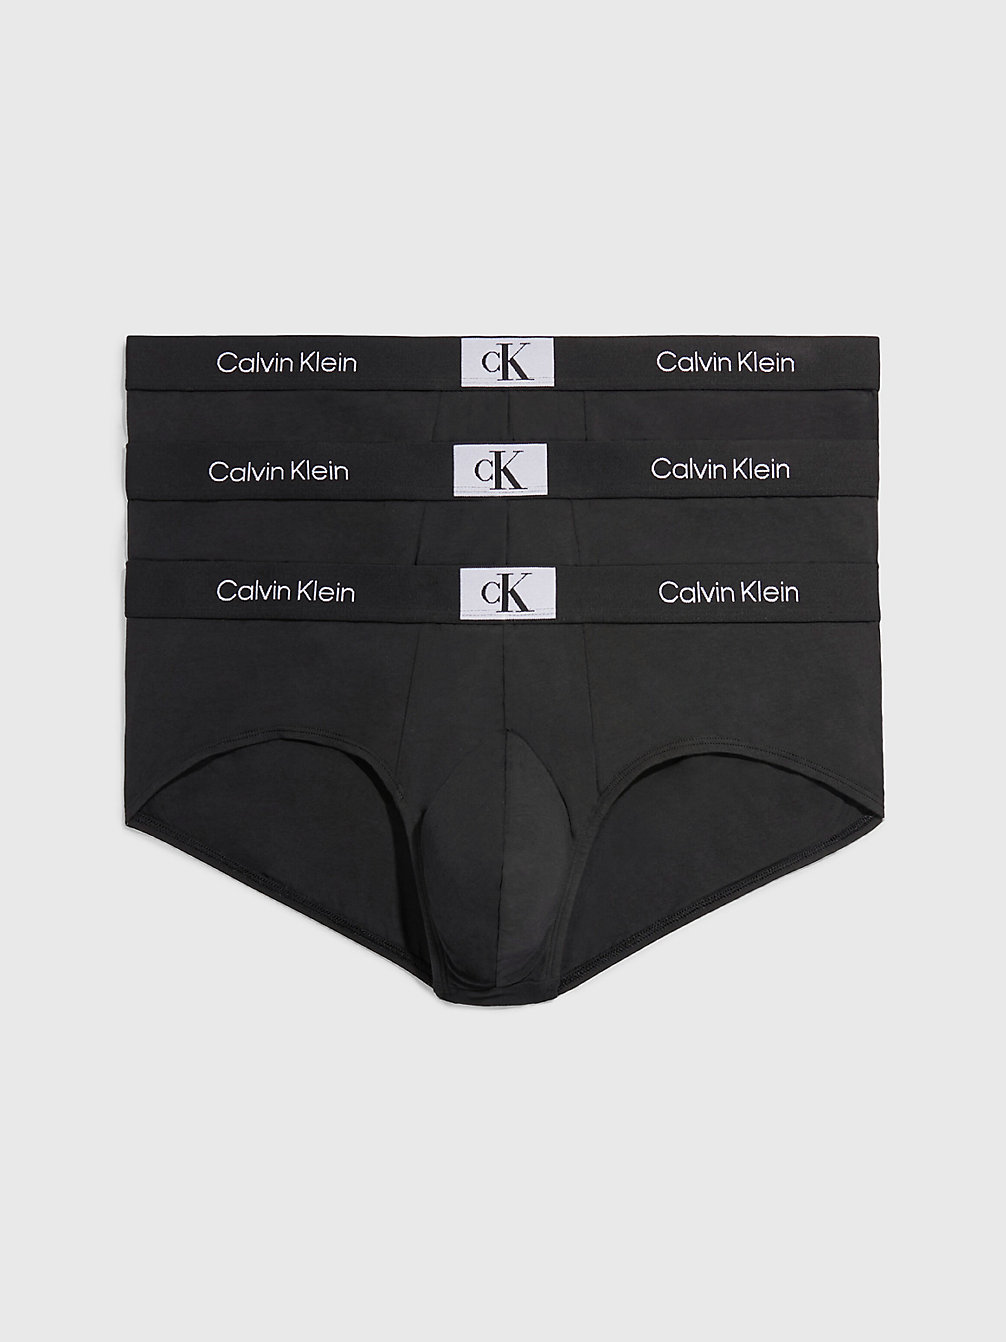 BLACK/BLACK/BLACK > Zestaw 3 Par Slipów Plus Size - Ck96 > undefined Mężczyźni - Calvin Klein